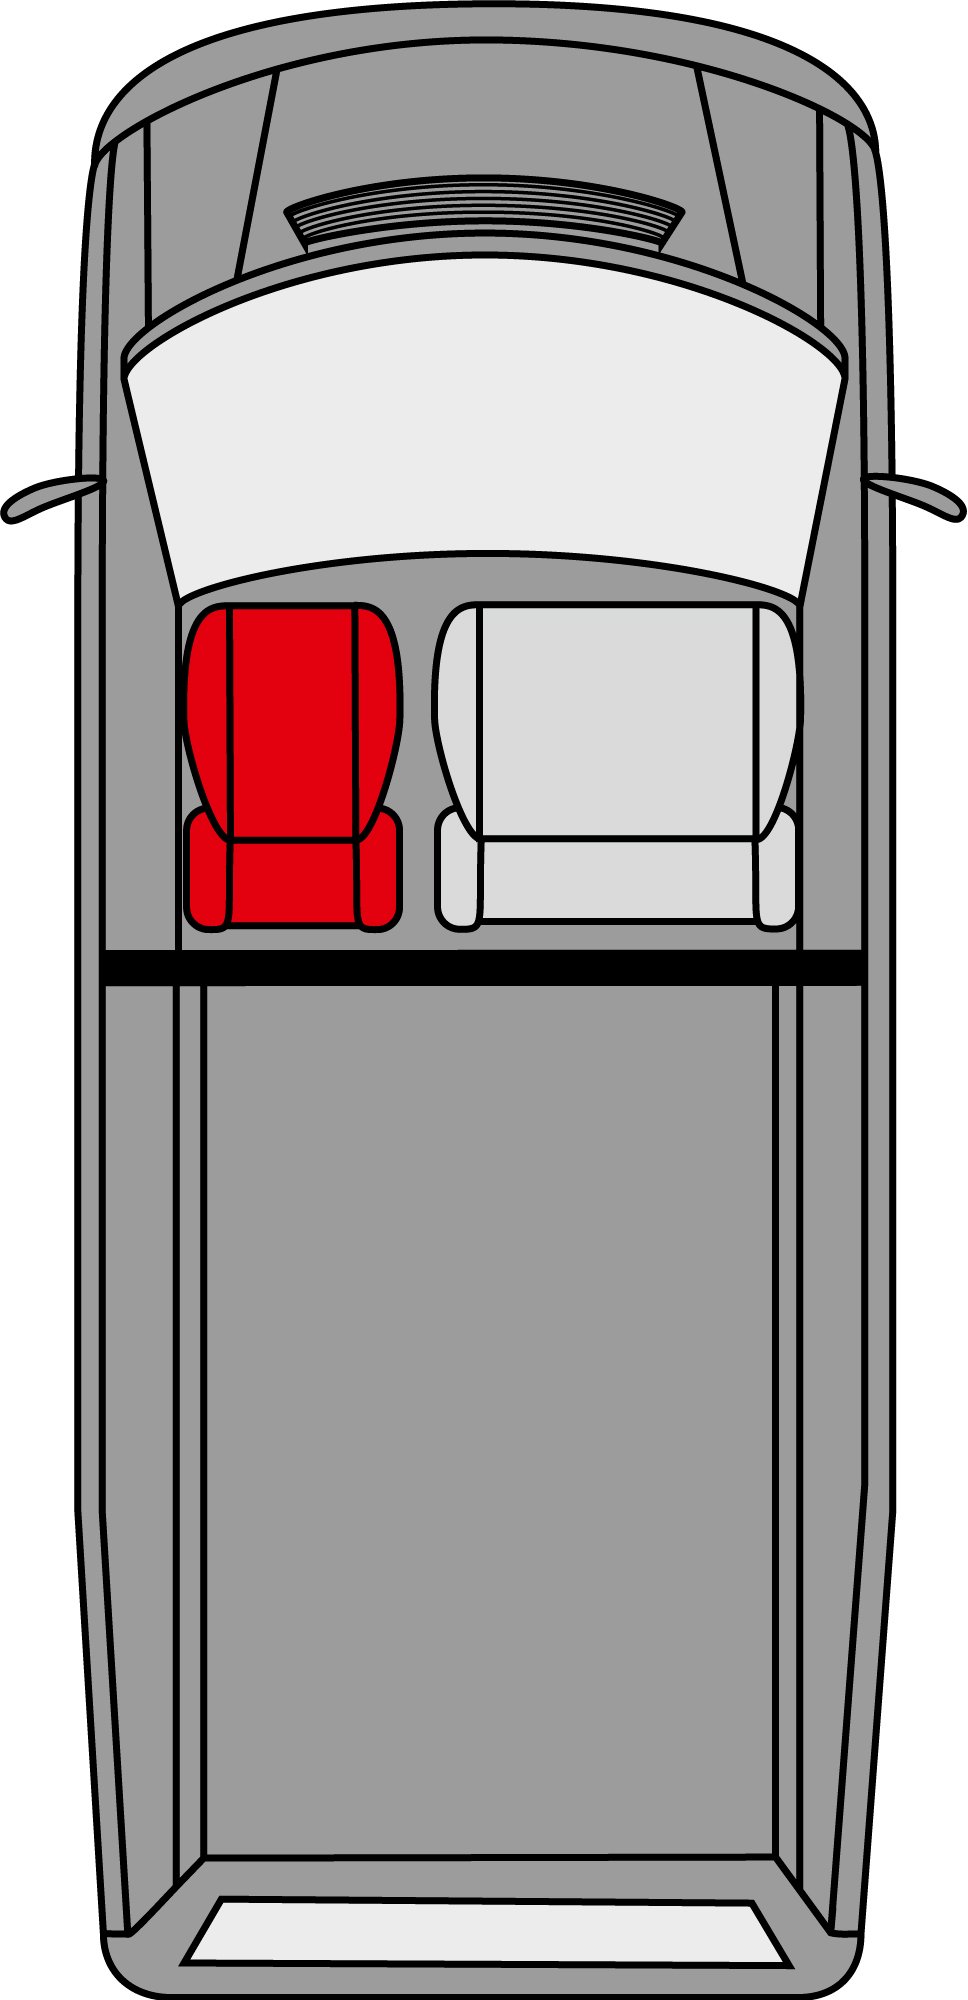 Housse de siège Transporter en tissu pour Mercedes Vito 447, siège simple avec accoudoir à l'intérieur